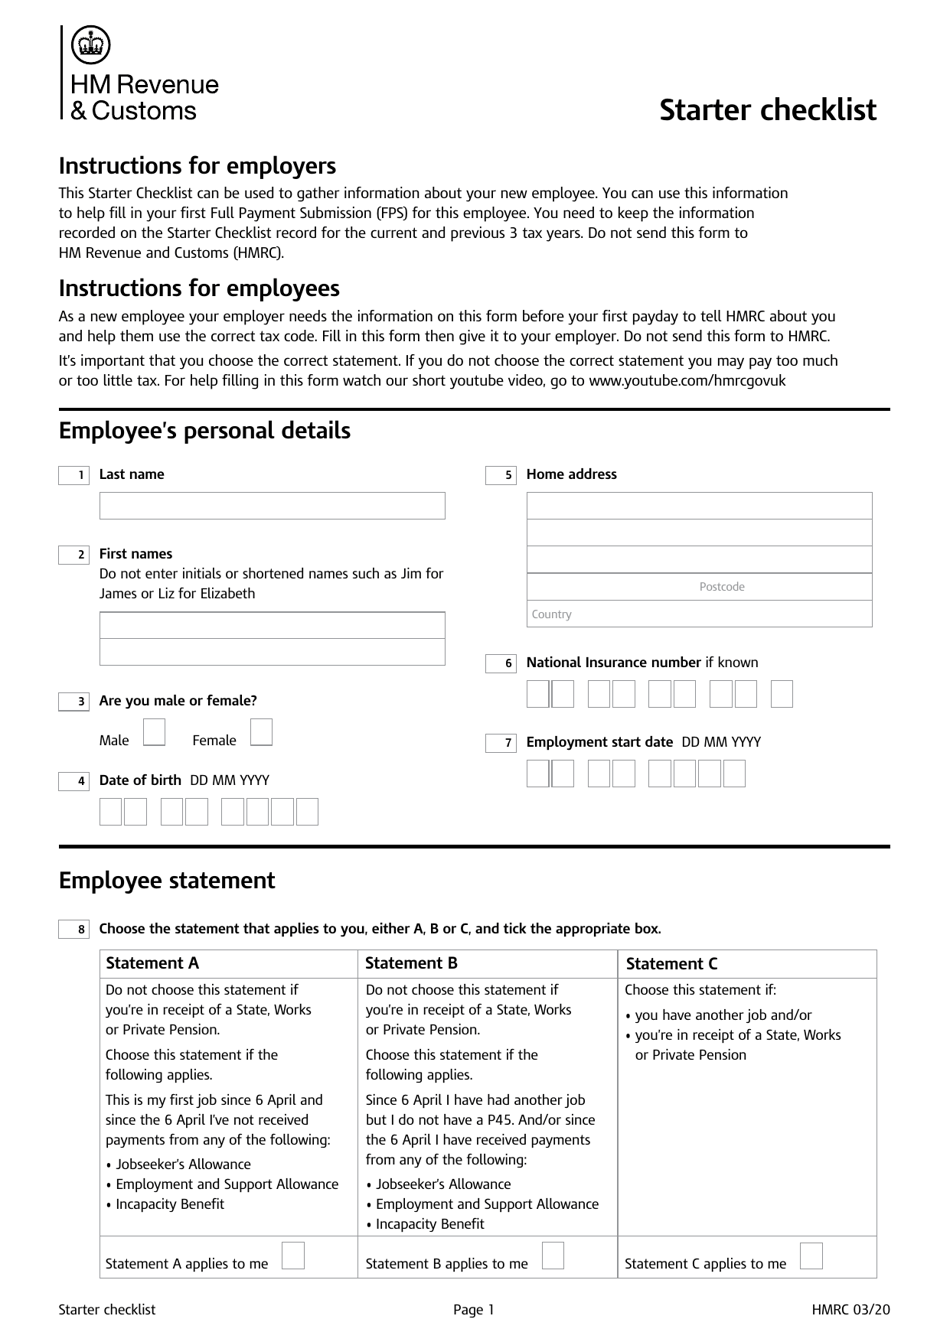 Starter Checklist - United Kingdom, Page 1